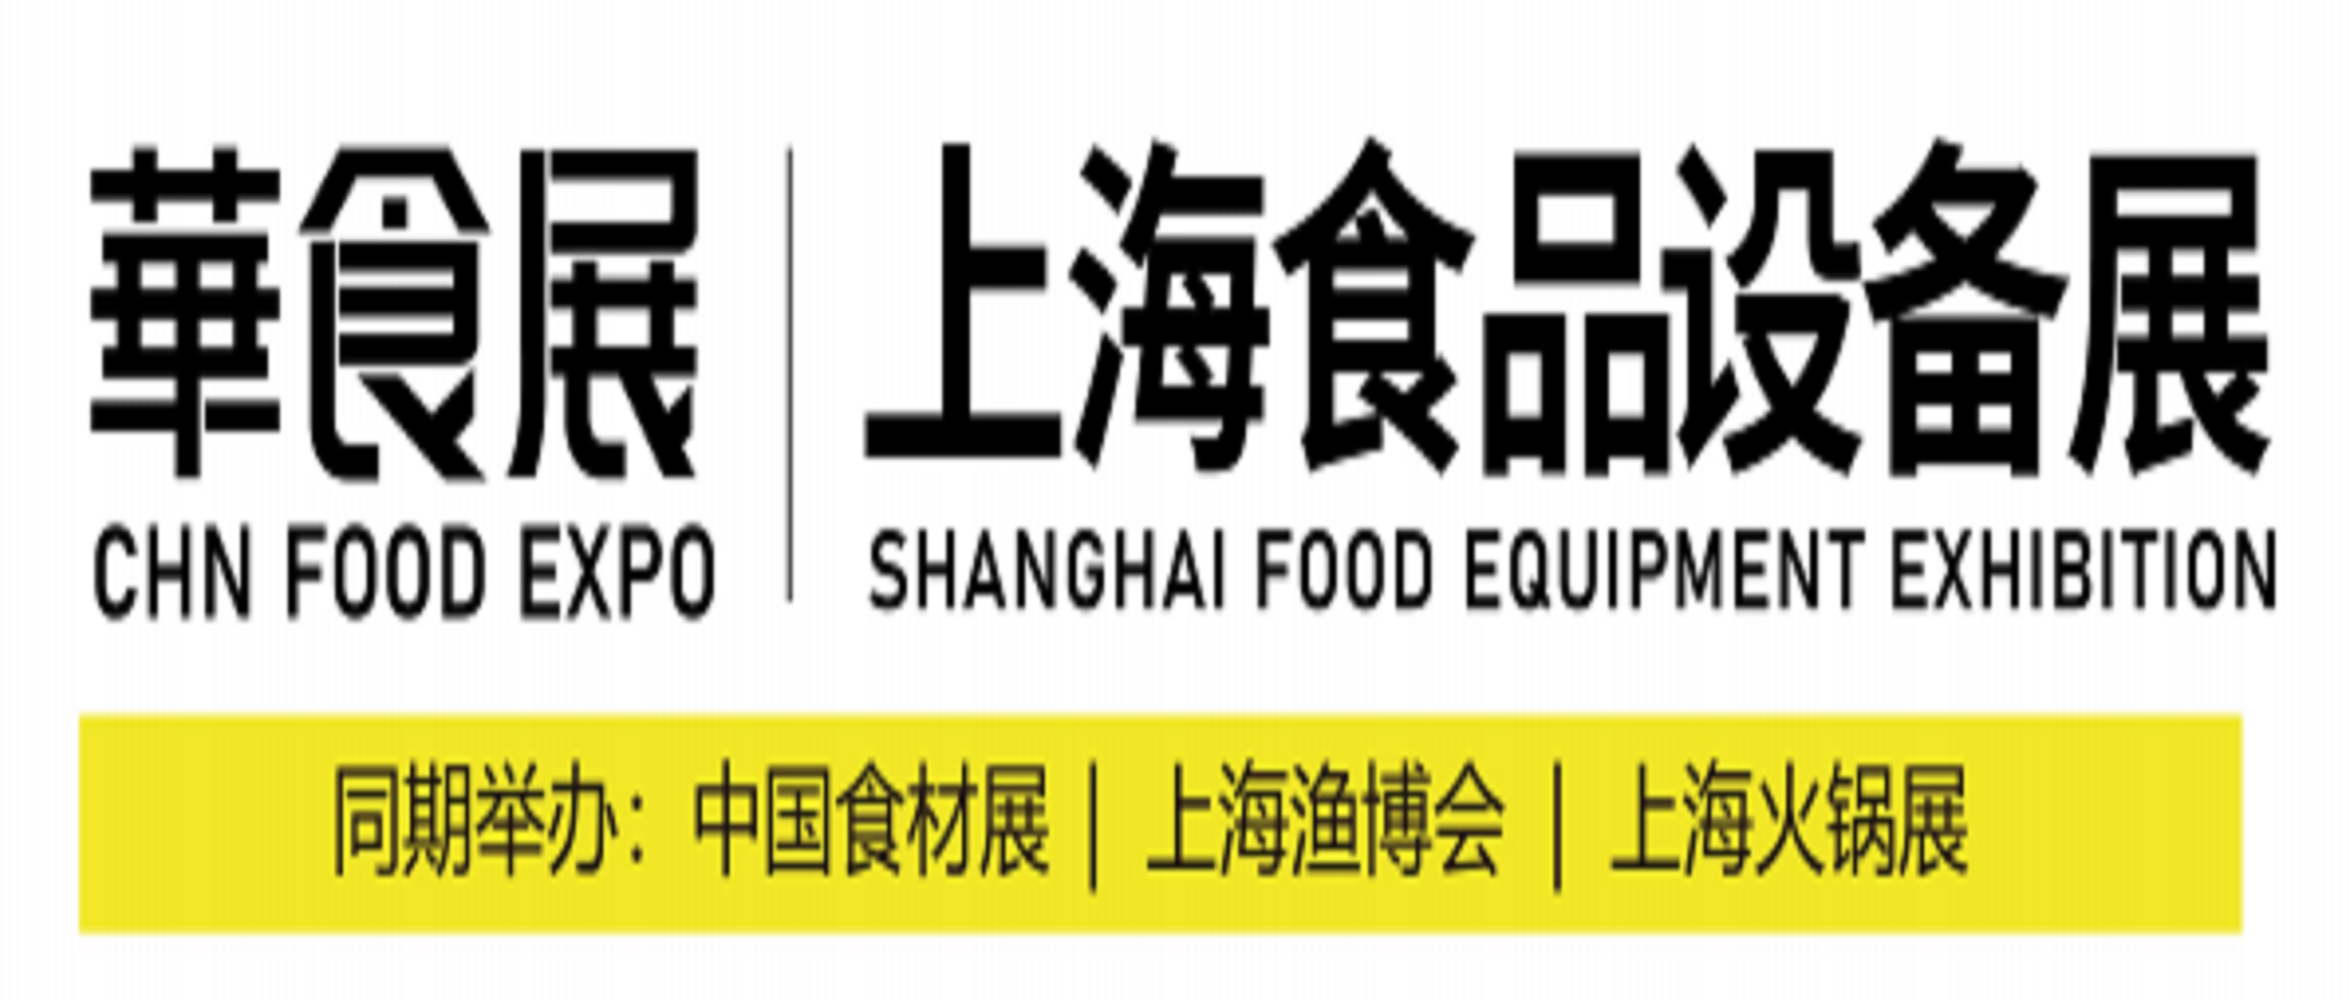 華食展——上海食品设备展